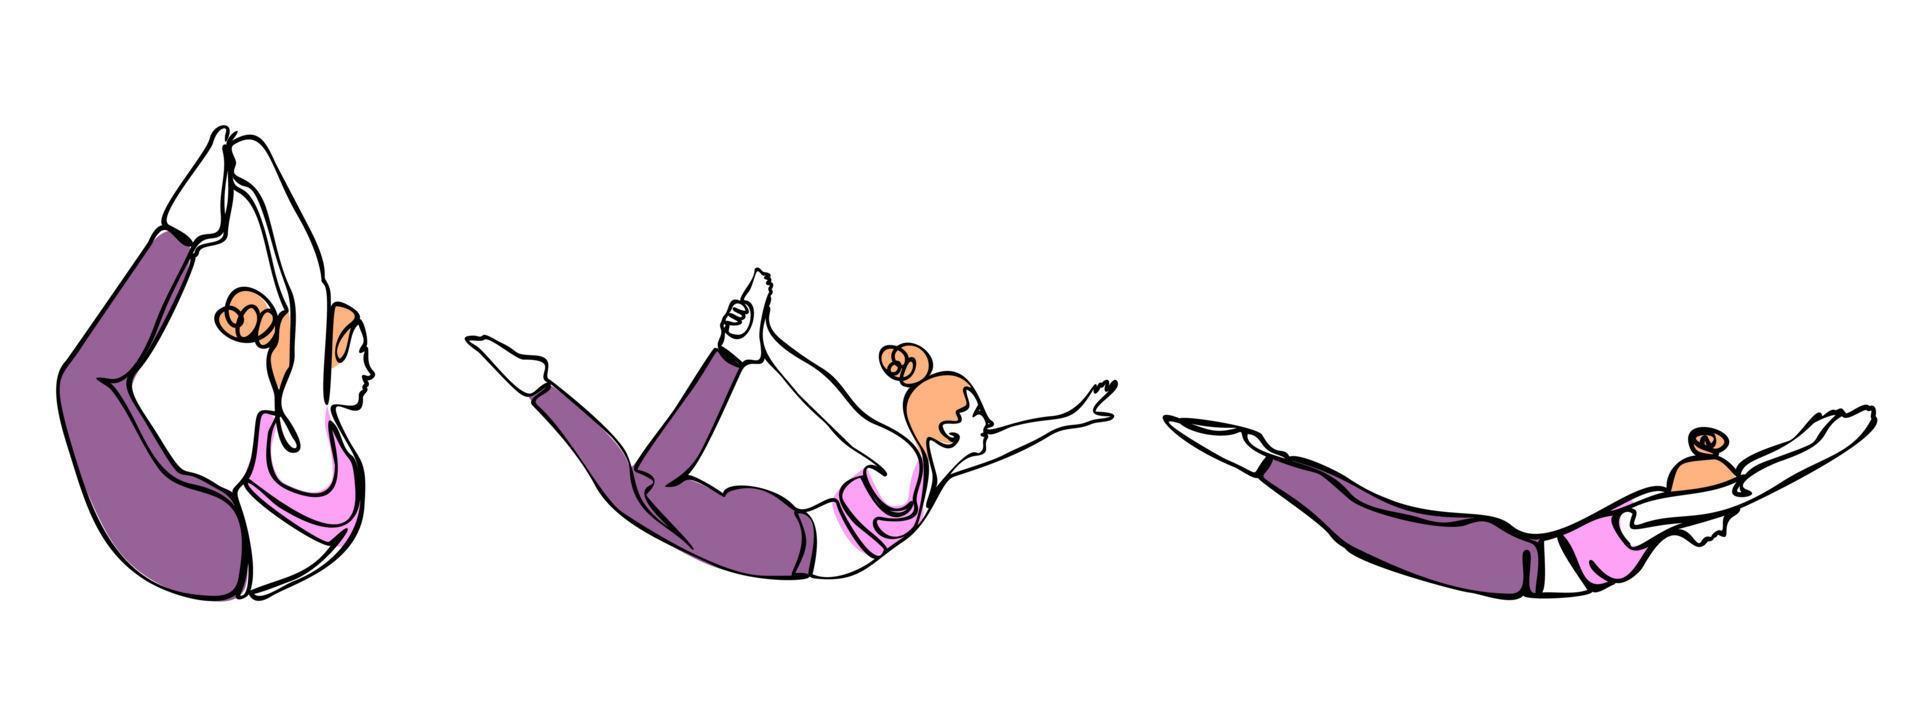 colección de iconos de poses de yoga aislado sobre fondo blanco. siluetas de mujer haciendo ejercicios de yoga y fitness. iconos vectoriales de chica flexible estirando y relajando su cuerpo en diferentes poses. vector